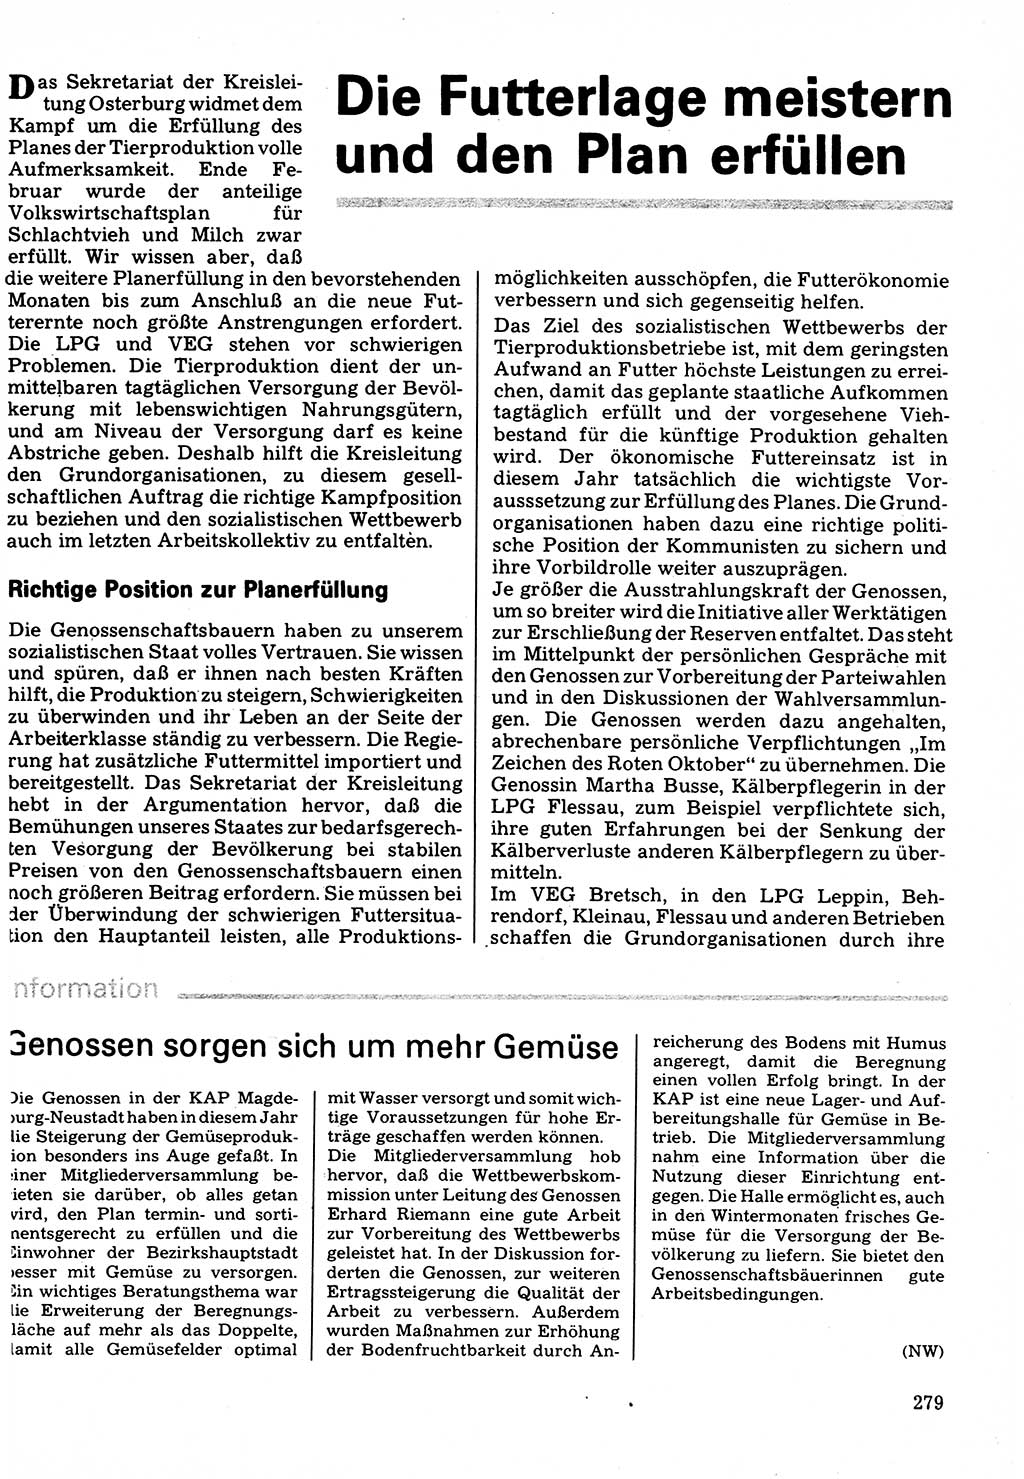 Neuer Weg (NW), Organ des Zentralkomitees (ZK) der SED (Sozialistische Einheitspartei Deutschlands) für Fragen des Parteilebens, 32. Jahrgang [Deutsche Demokratische Republik (DDR)] 1977, Seite 279 (NW ZK SED DDR 1977, S. 279)